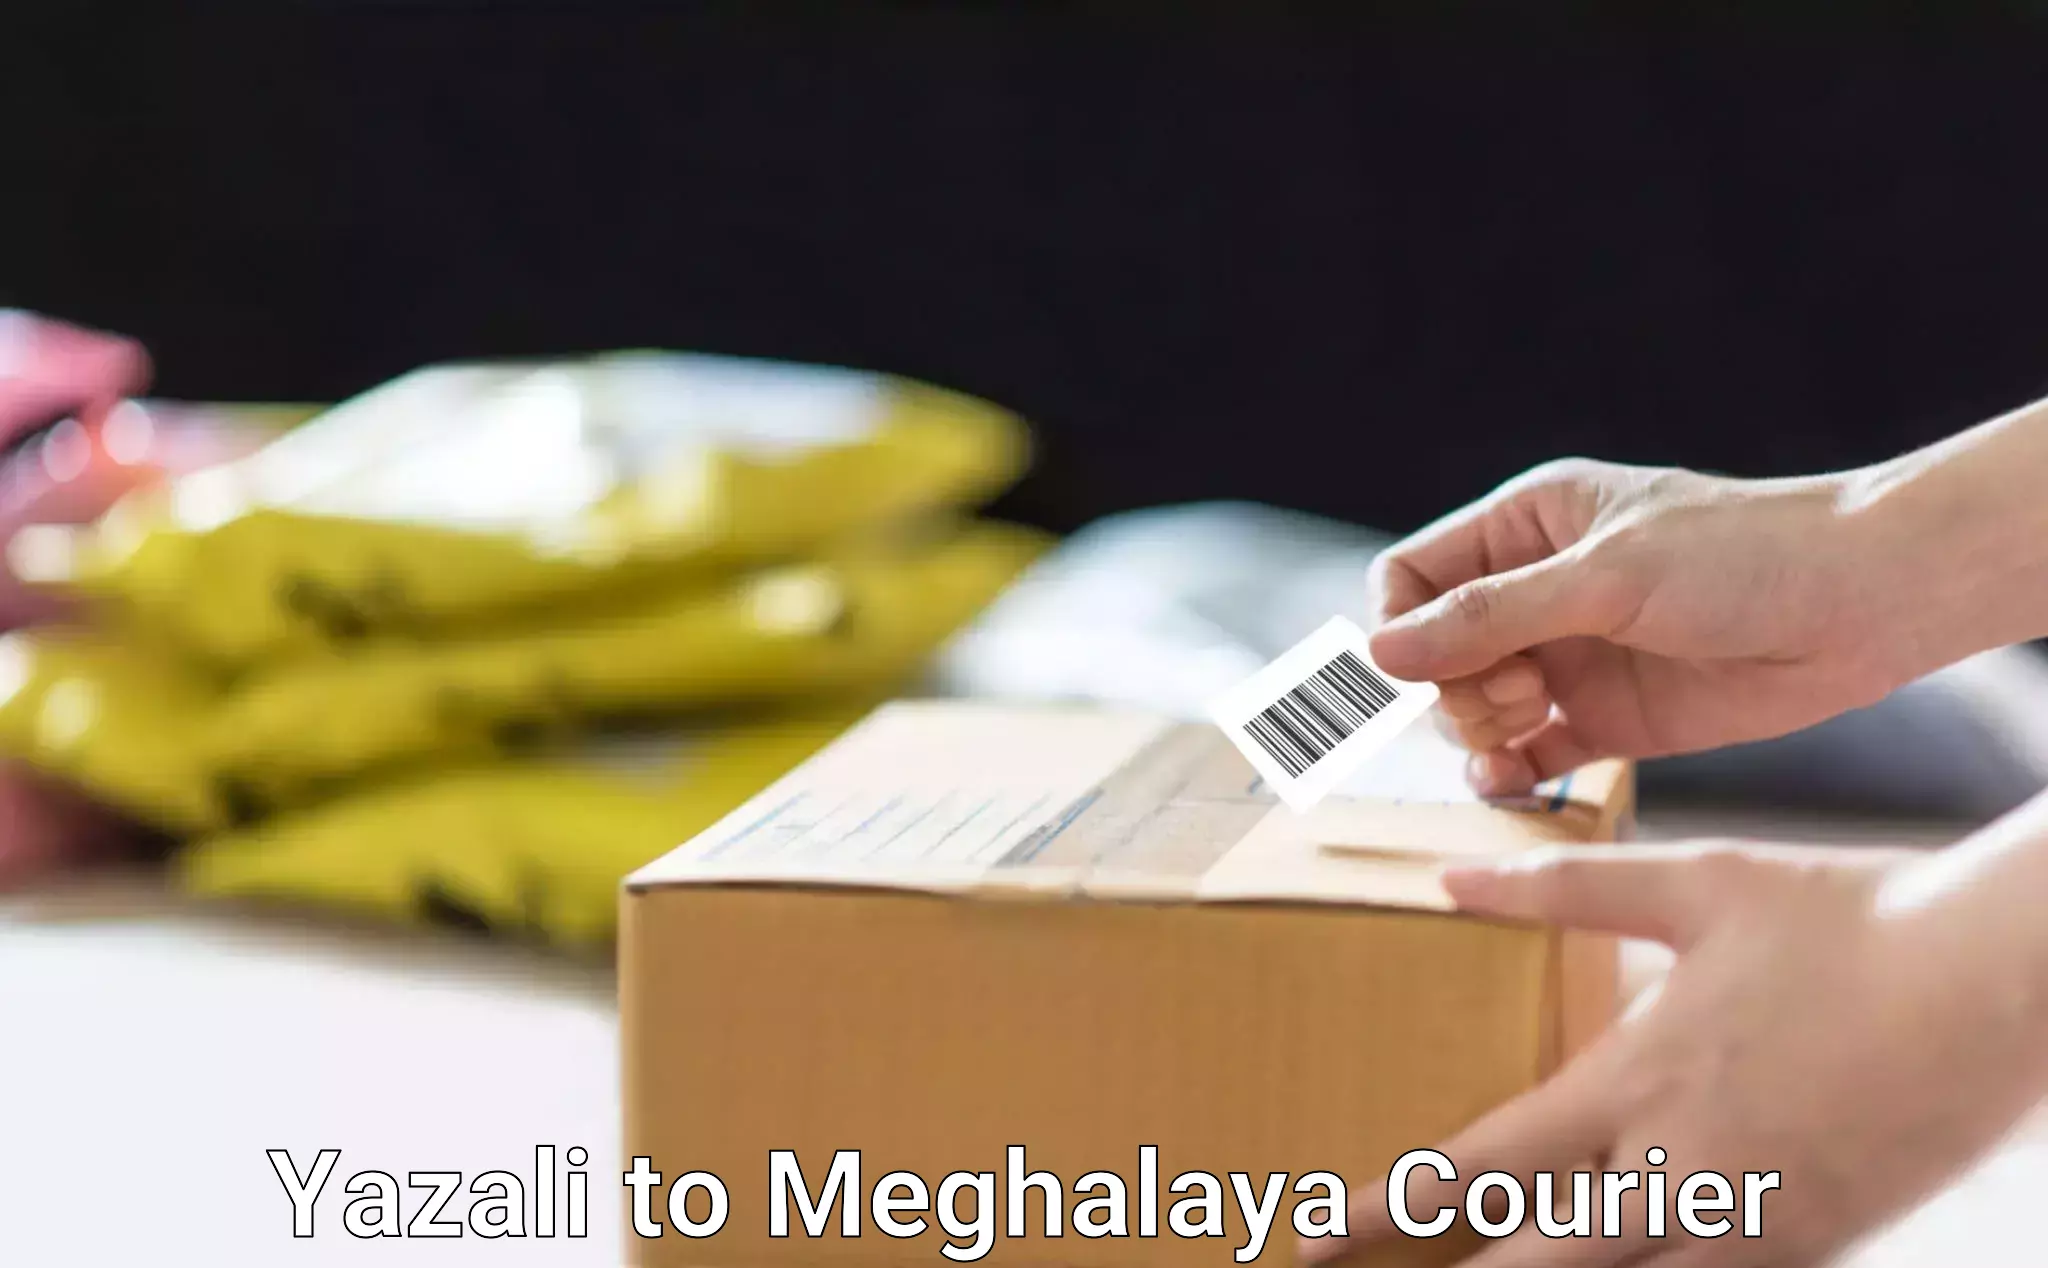 Optimized shipping routes Yazali to Meghalaya